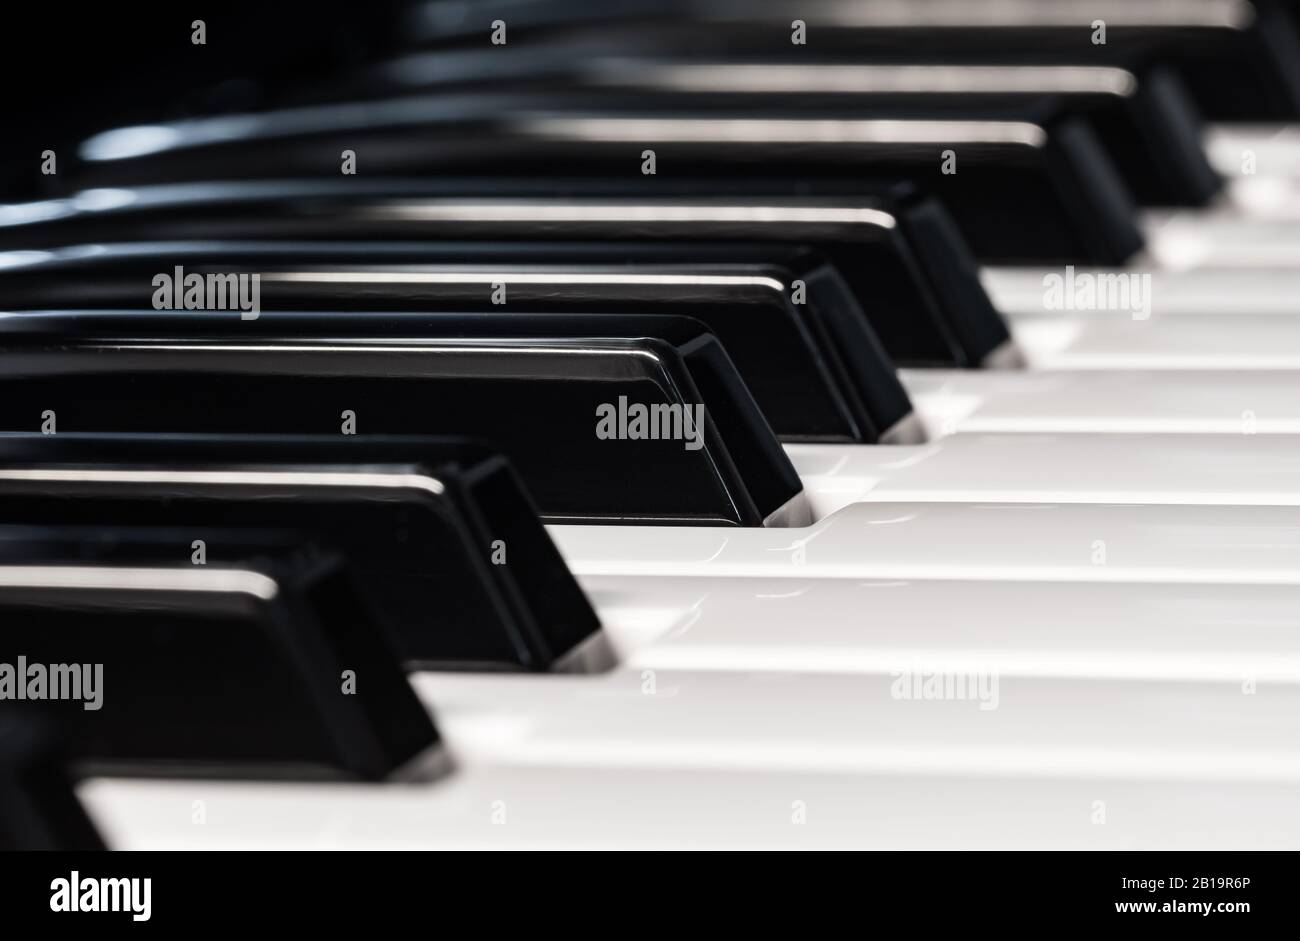 Chiusura di tasti o note su una tastiera musicale del pianoforte o del sintetizzatore. Foto Stock